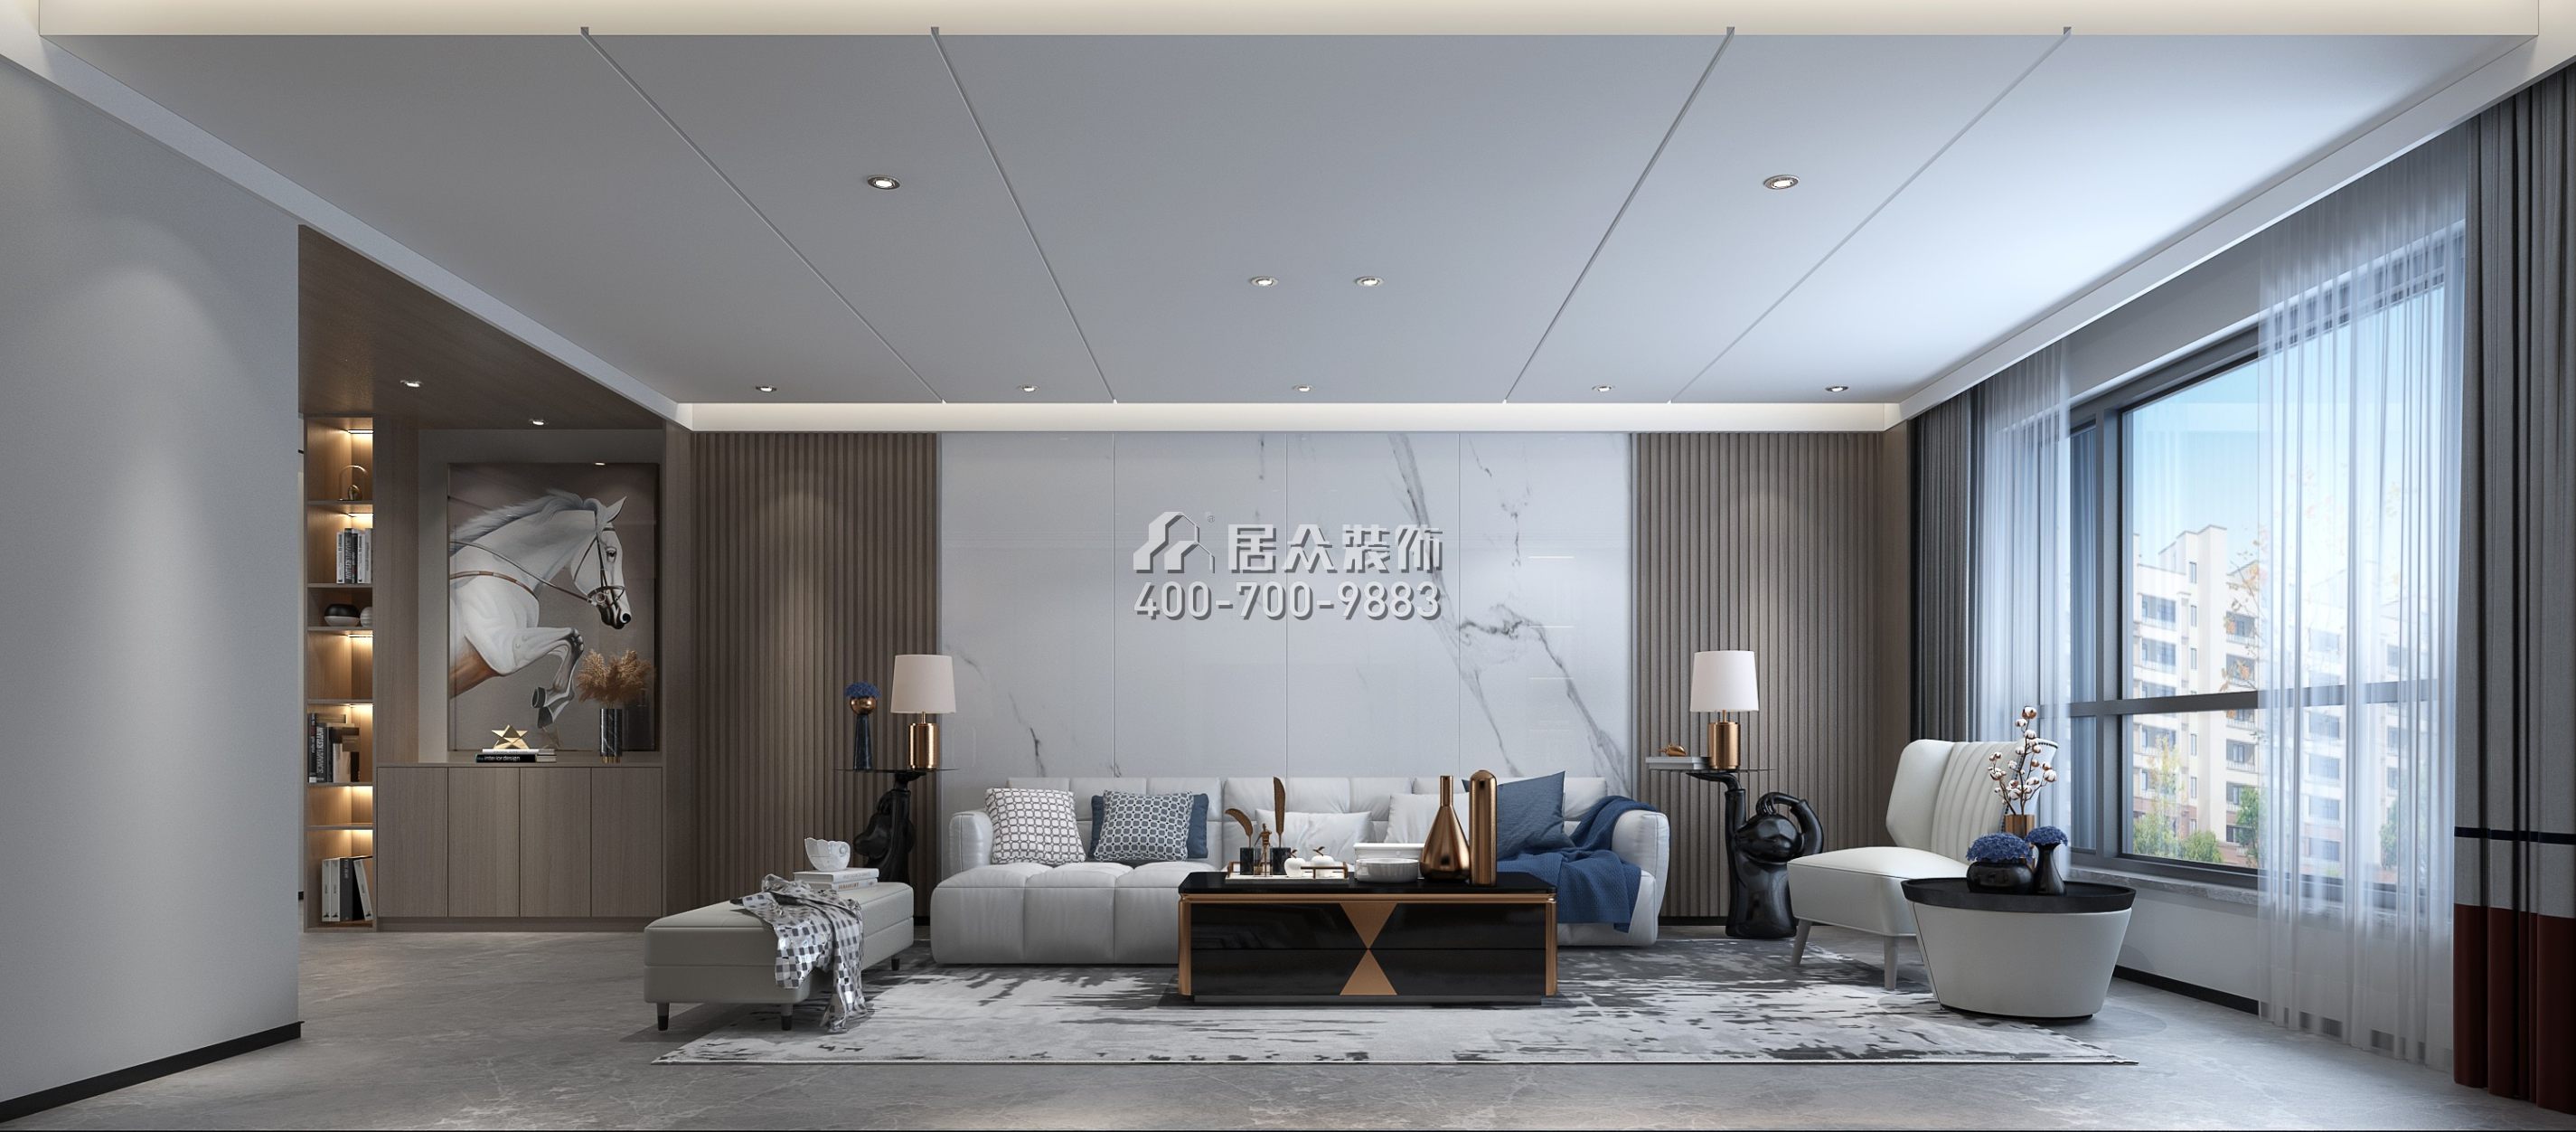 中泰財富湘江200平方米現代簡約風格平層戶型客廳裝修效果圖